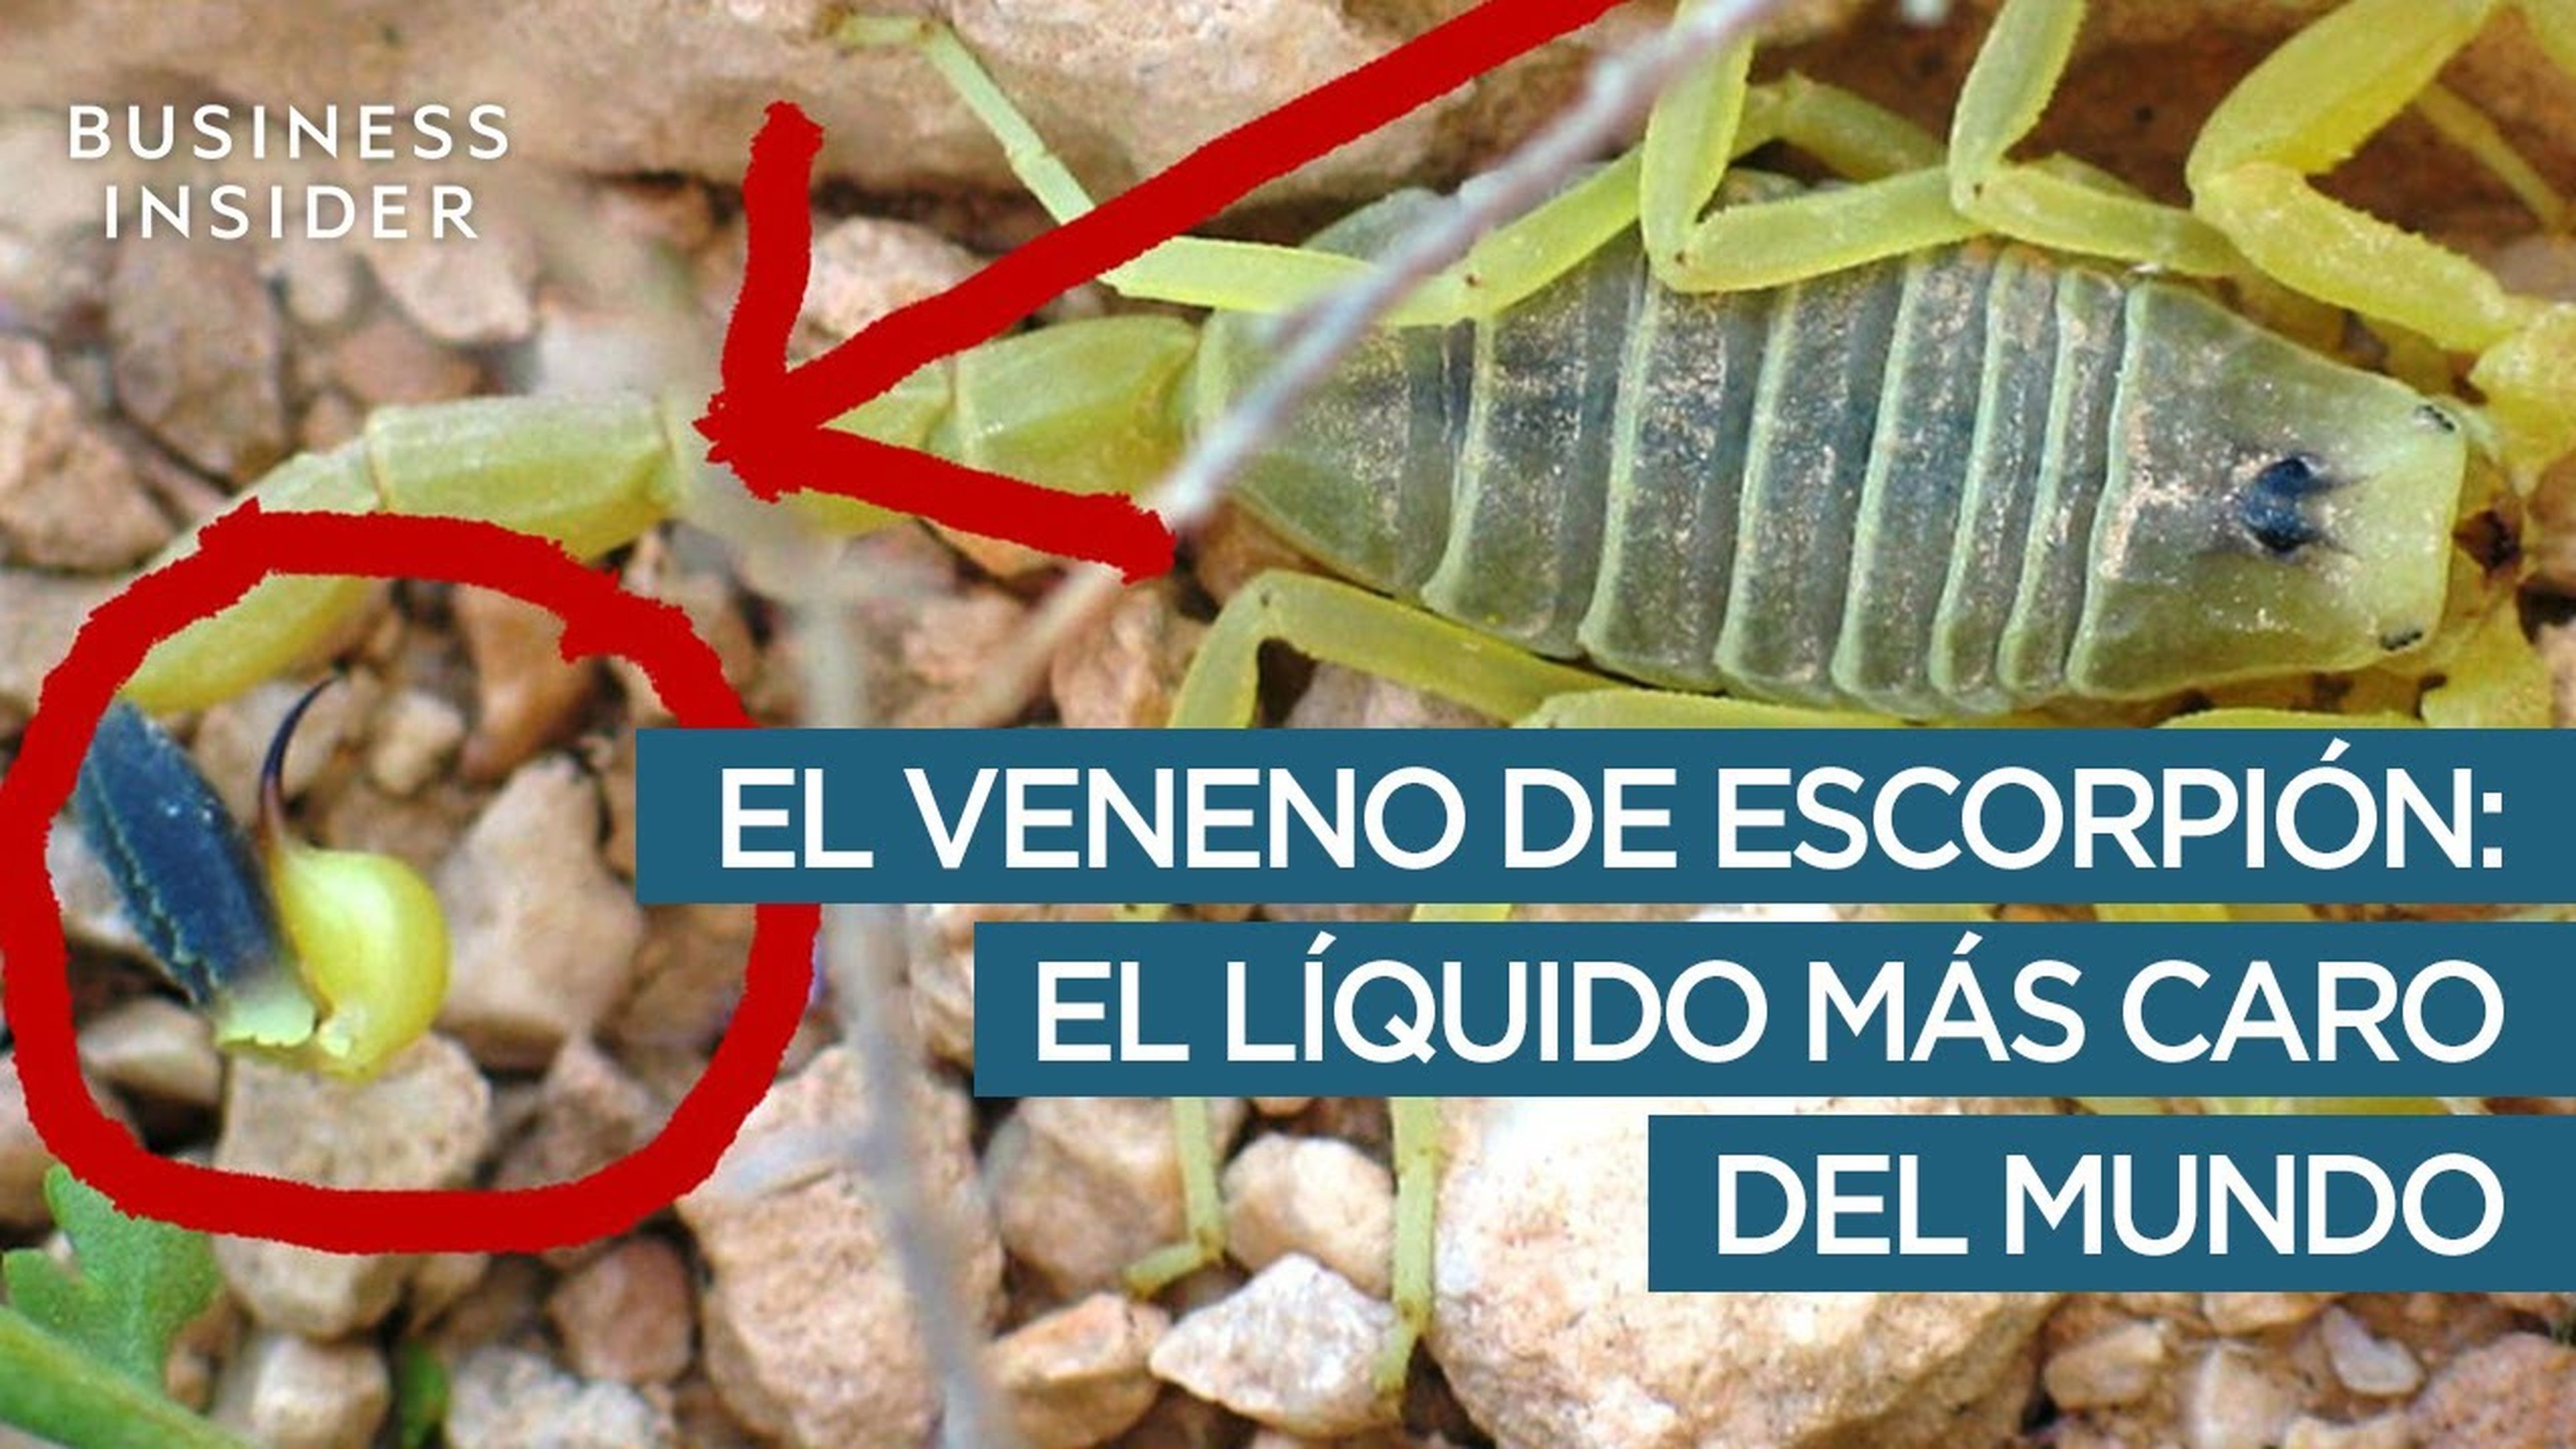 El veneno de escorpión: el líquido más caro del mundo